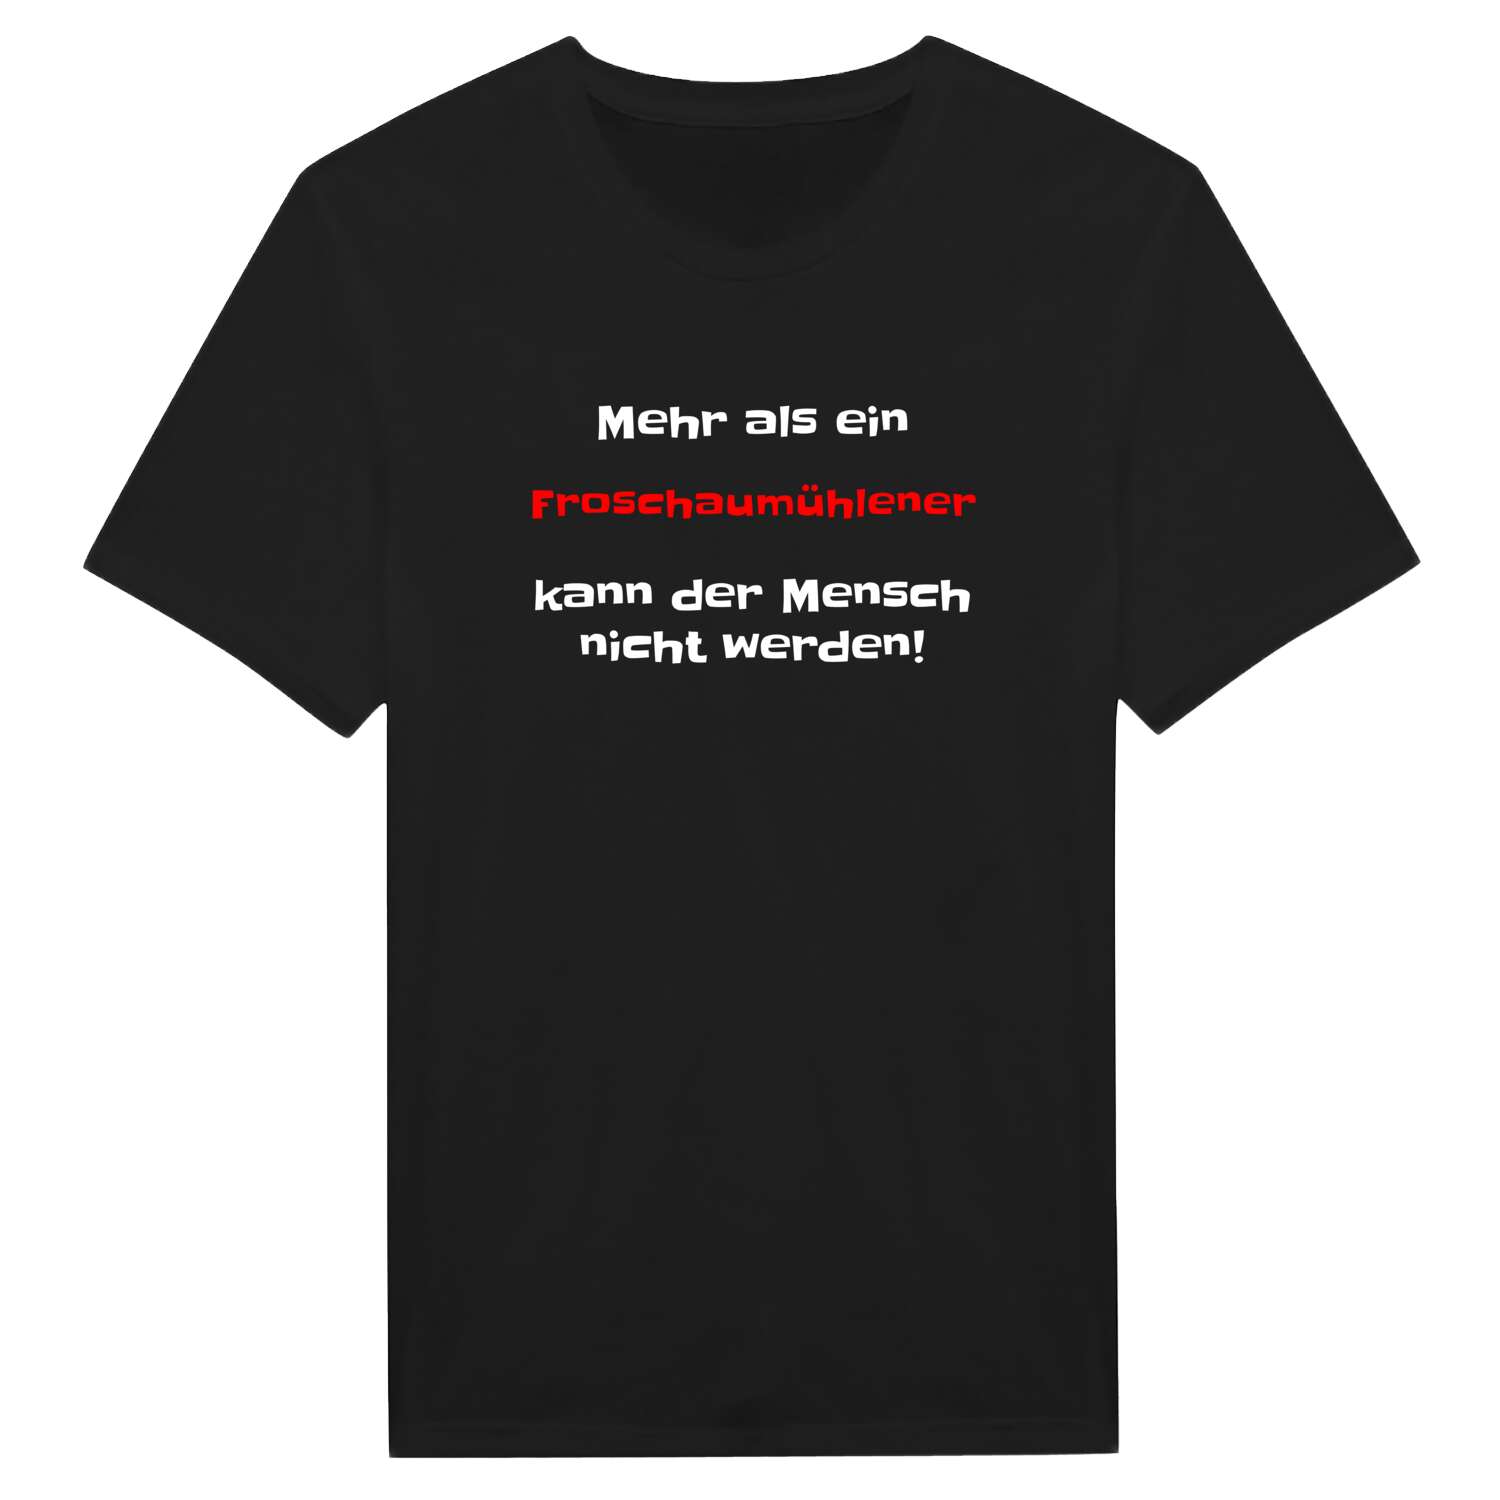 Froschaumühle T-Shirt »Mehr als ein«